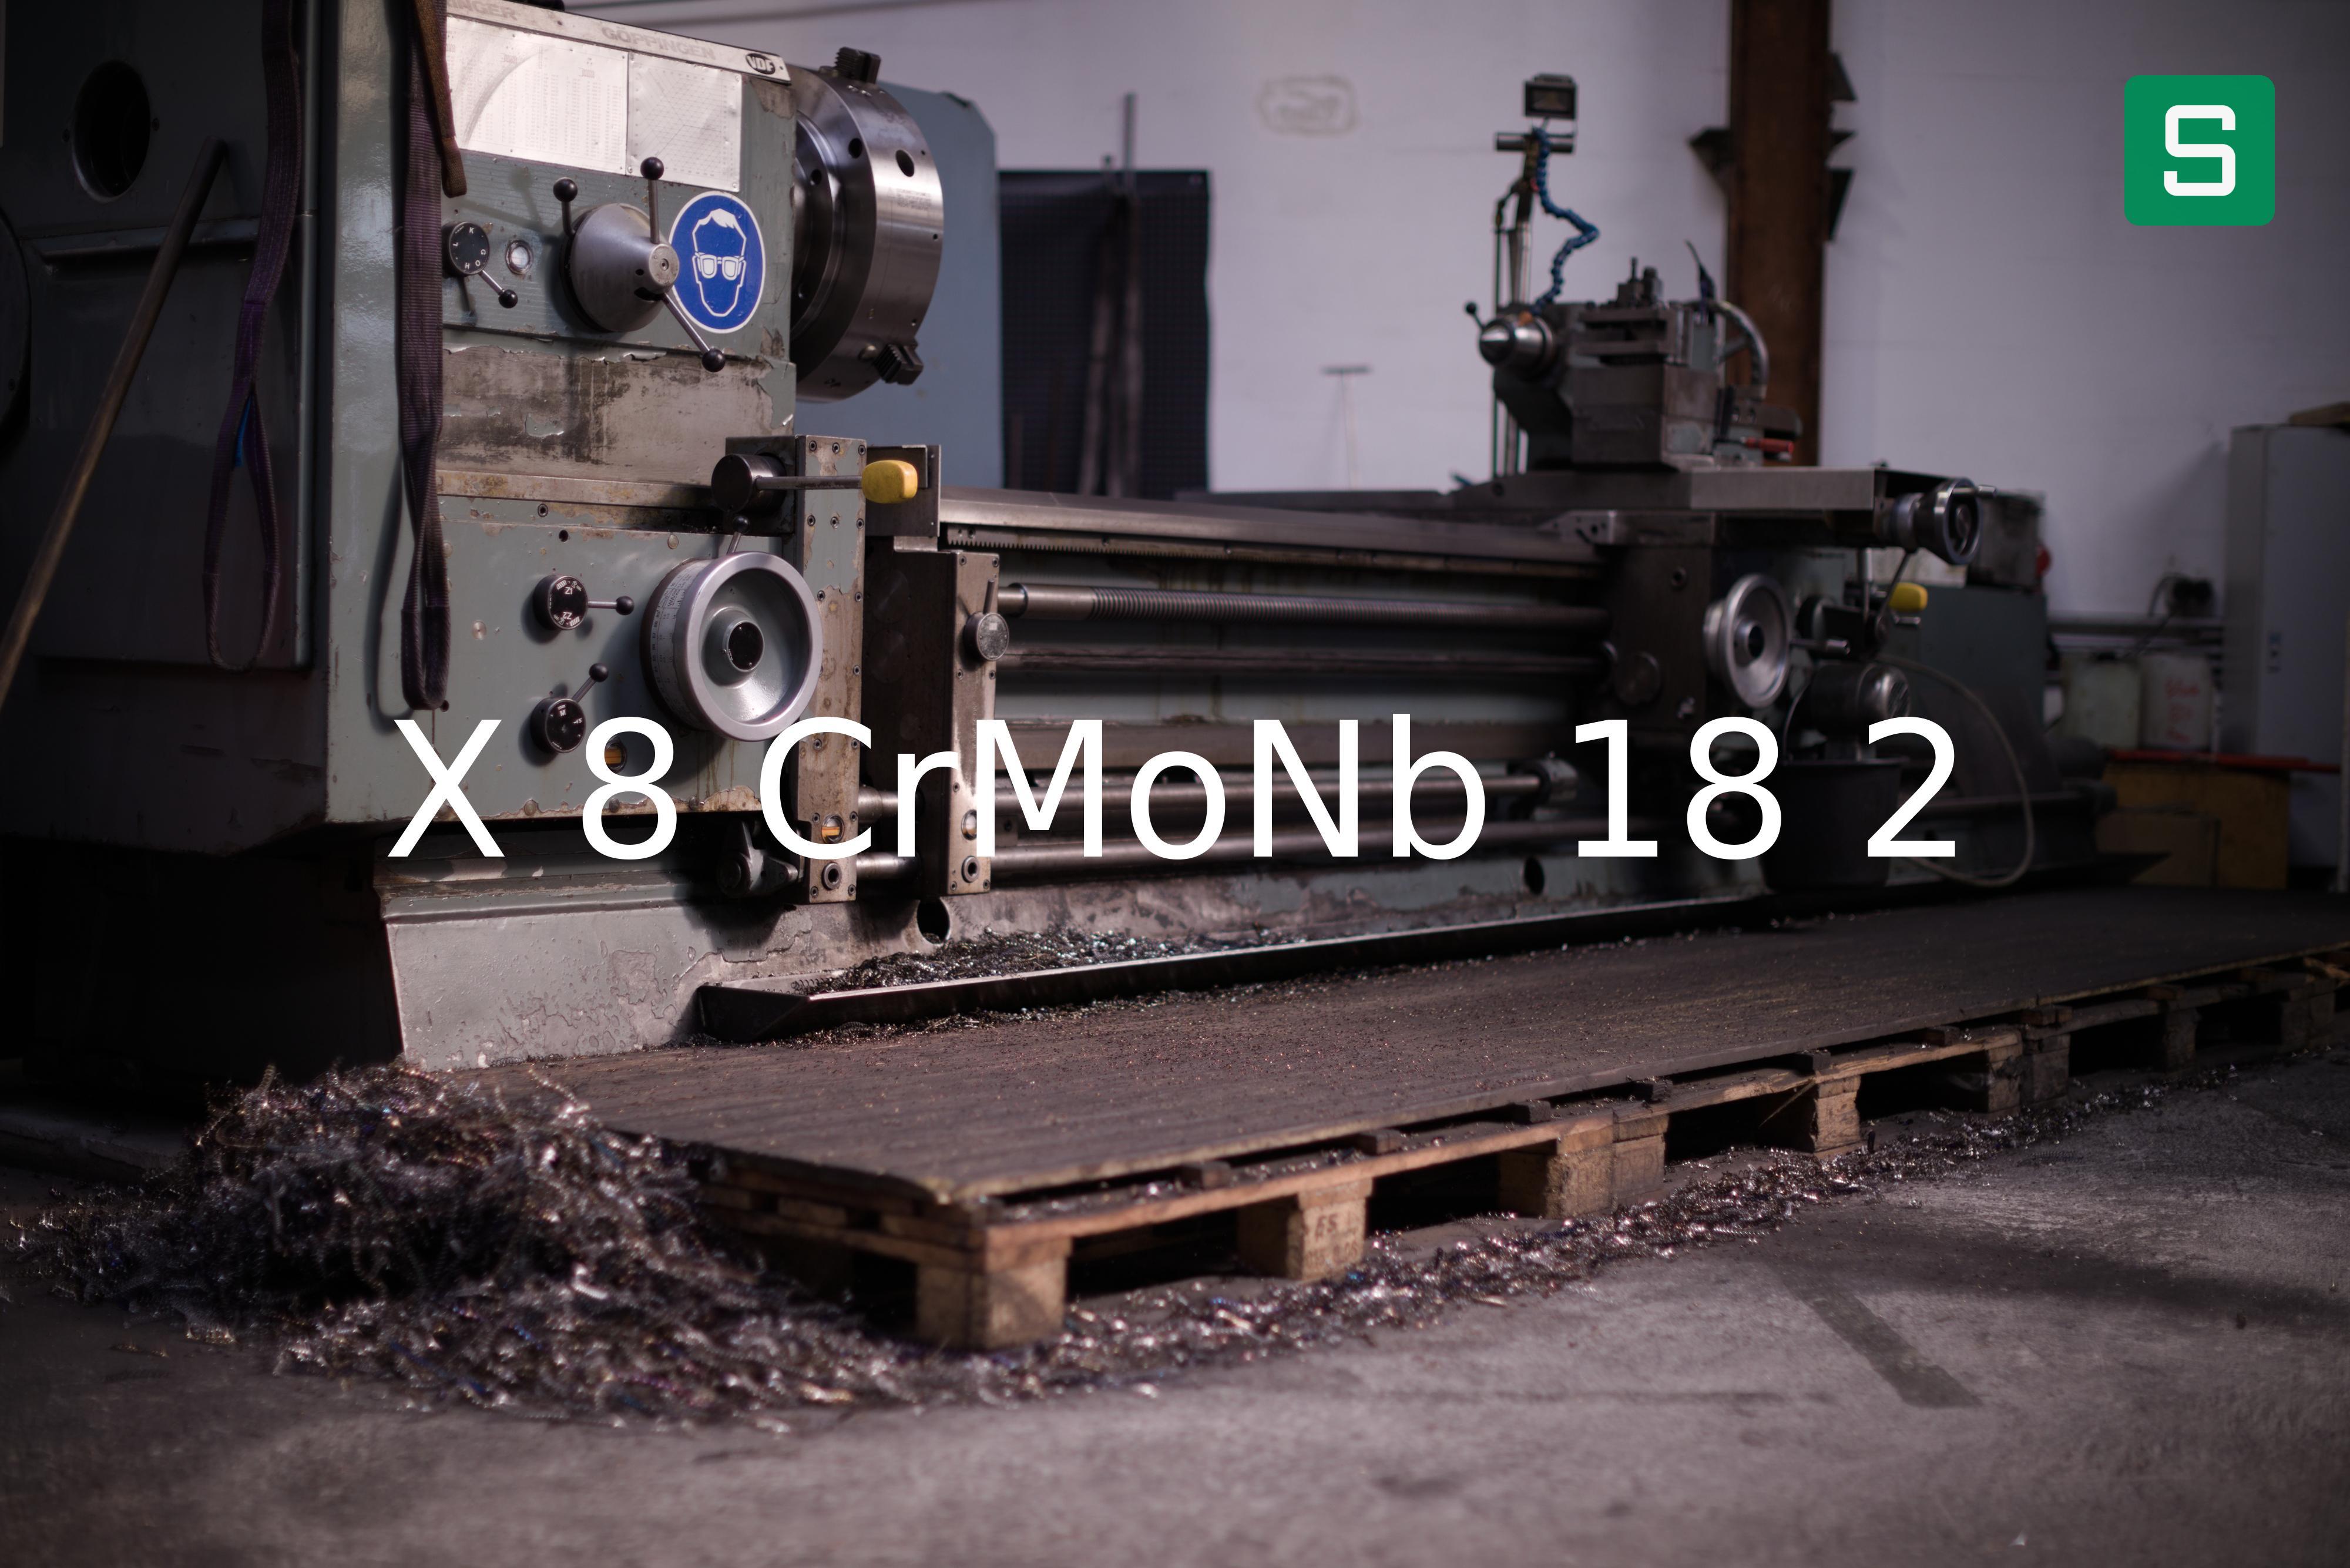 Steel Material: X 8 CrMoNb 18 2